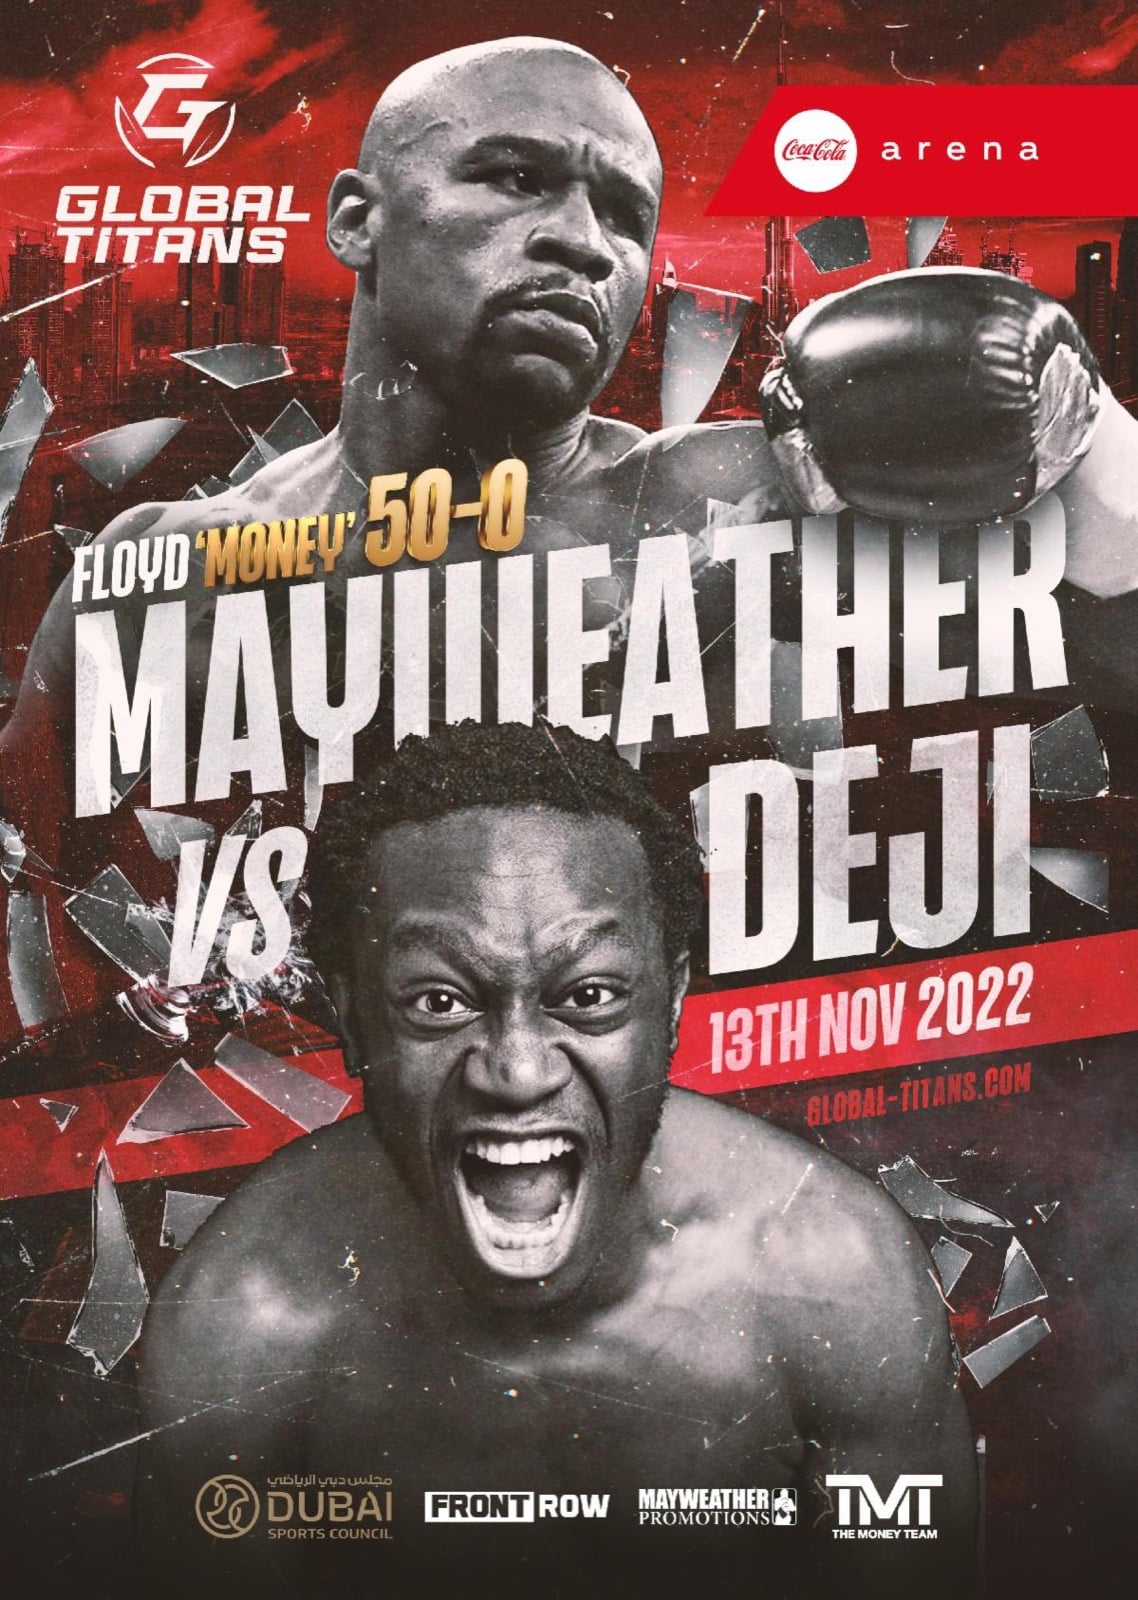 Mayweather vs Deji In Dubai on November 13